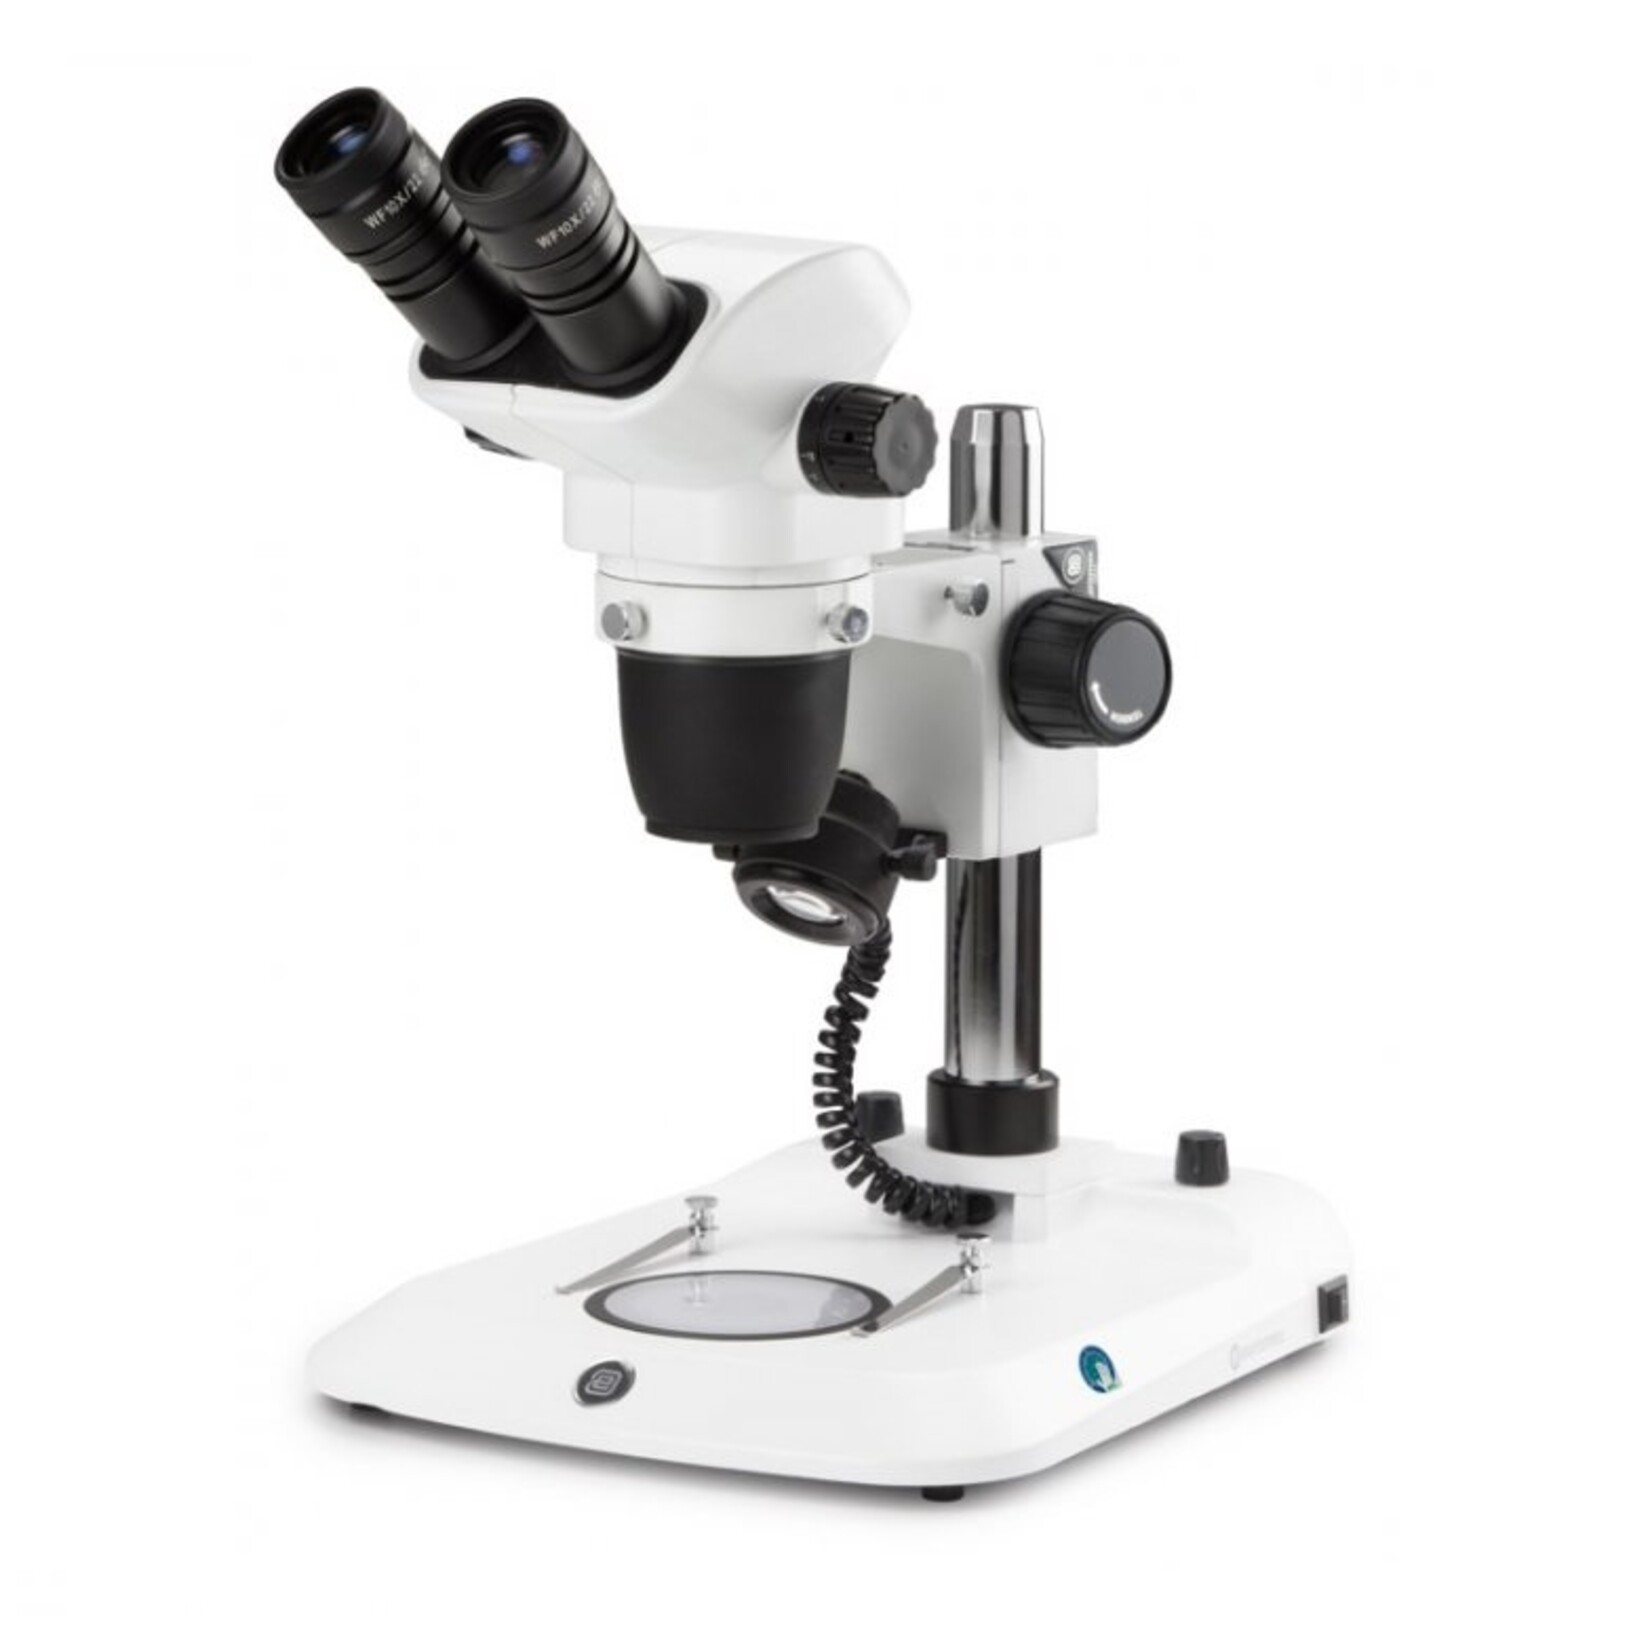 Dwuokularowy mikroskop stereoskopowy NexiusZoom, obiektyw od 0,67x do 4,5x, powiększenie od 6,7x do 45x ze statywem kolumnowym